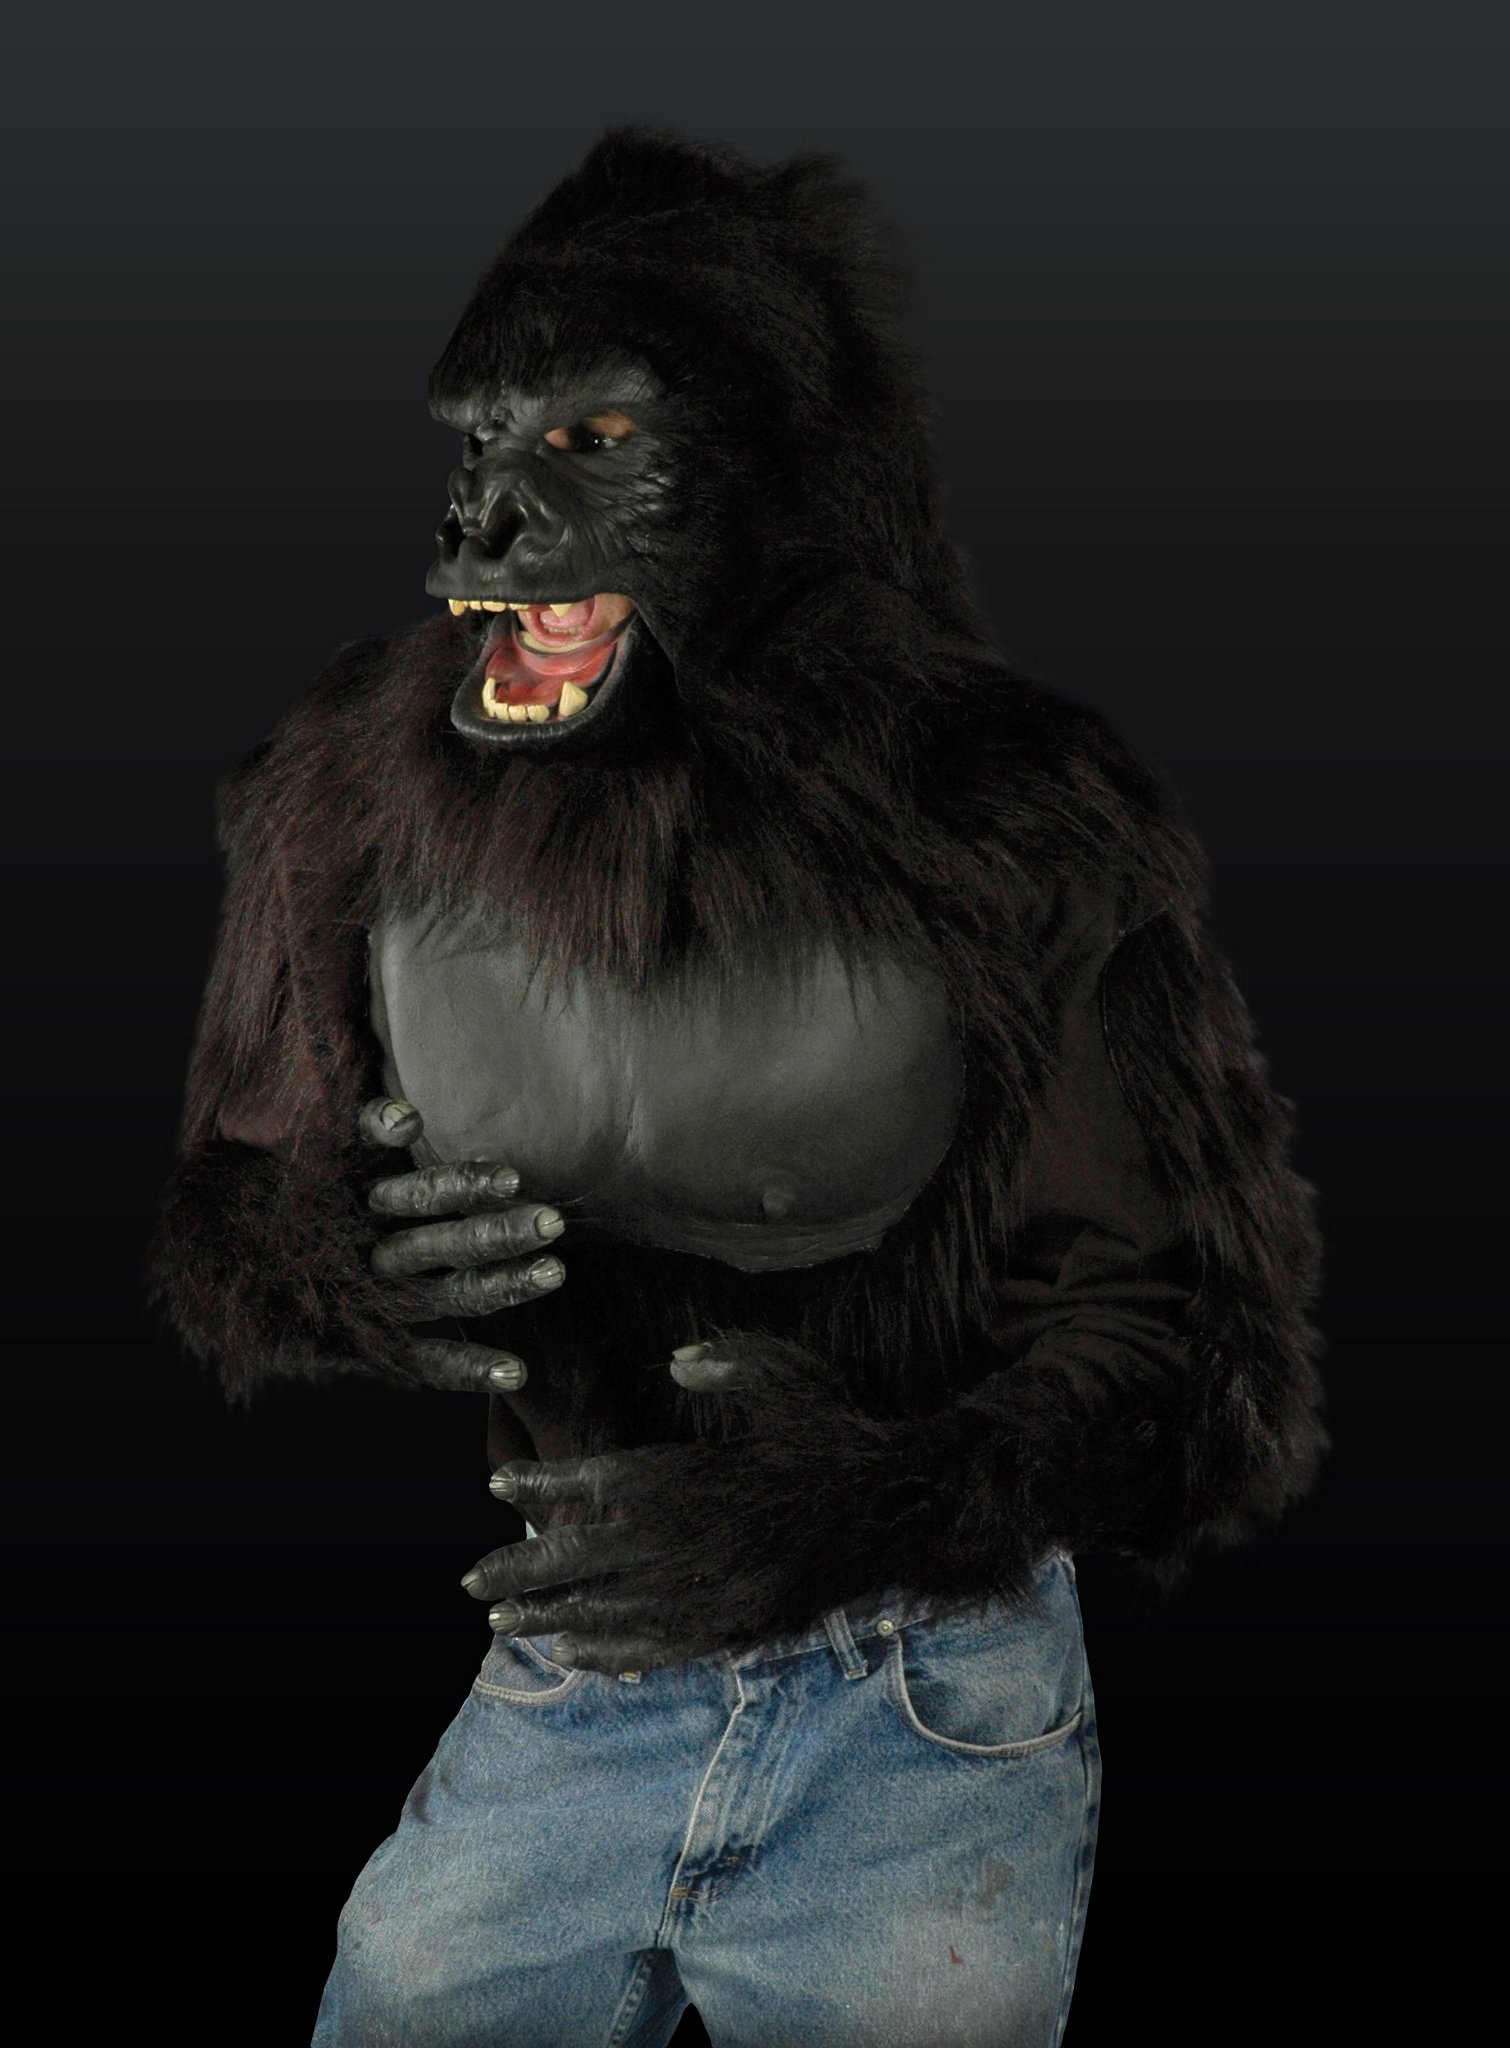 https://i.mmo.cm/is/image/mmoimg/mmo-markets/106474-gorilla-deluxe-chest-oberkoerper.jpg